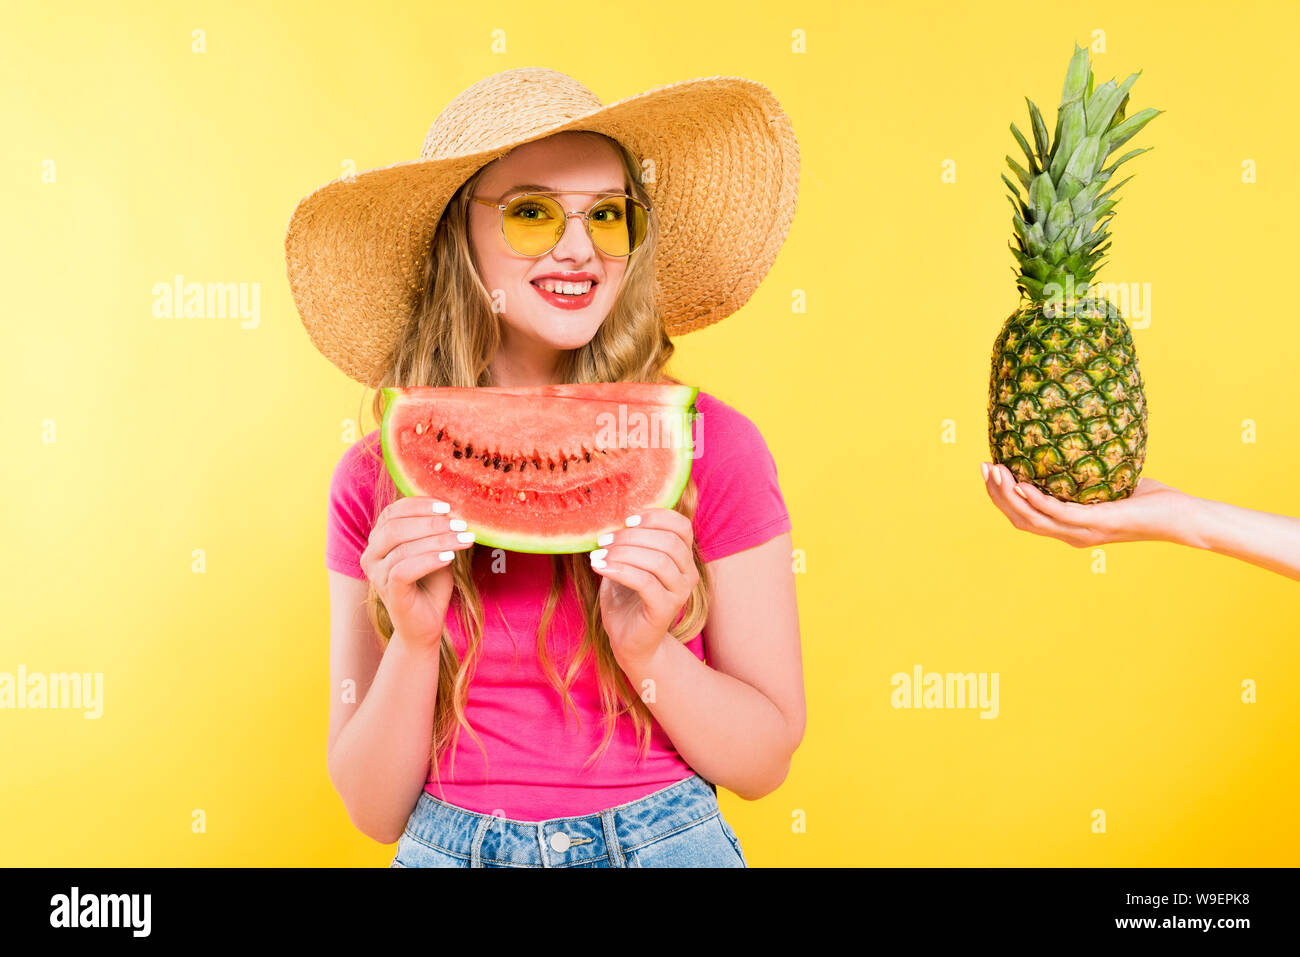 Дыни девушек. Шлёпа с арбузами. Девушка держит ананас. Шляпа с арбузиками. Девушка в шляпе с арбузом.